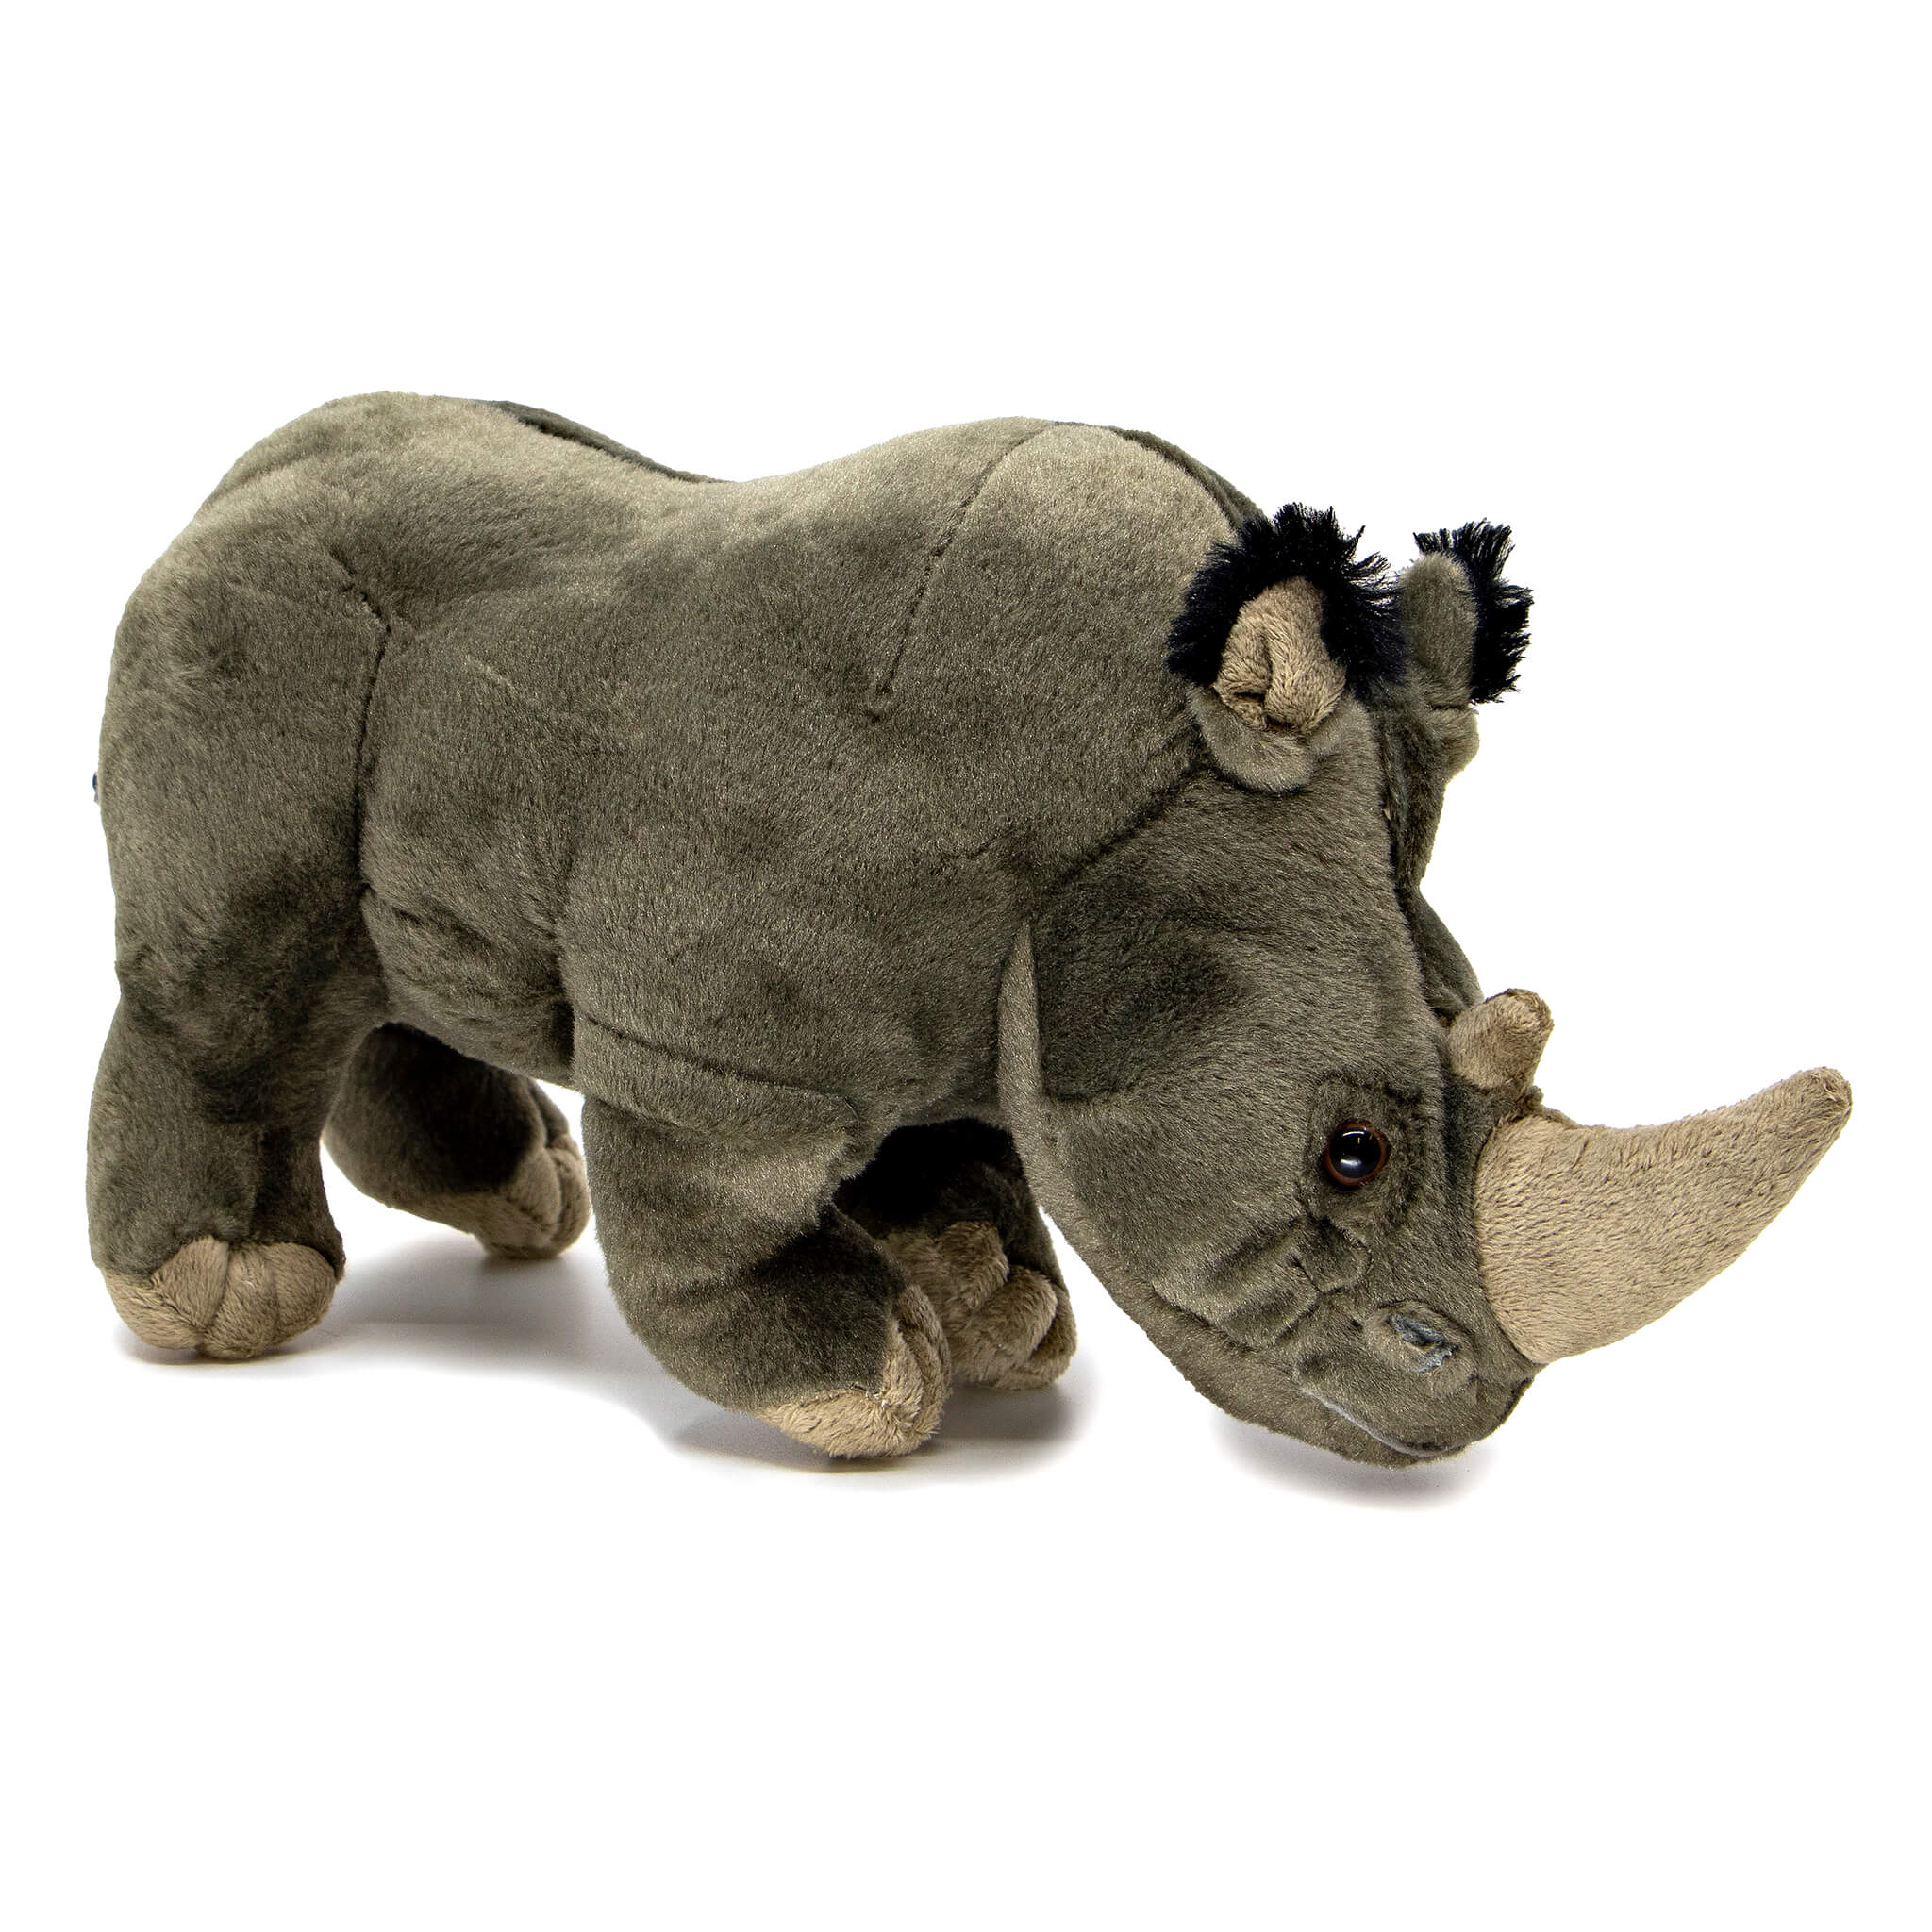 Rhino Soft Toy – Perth Zoo Shop